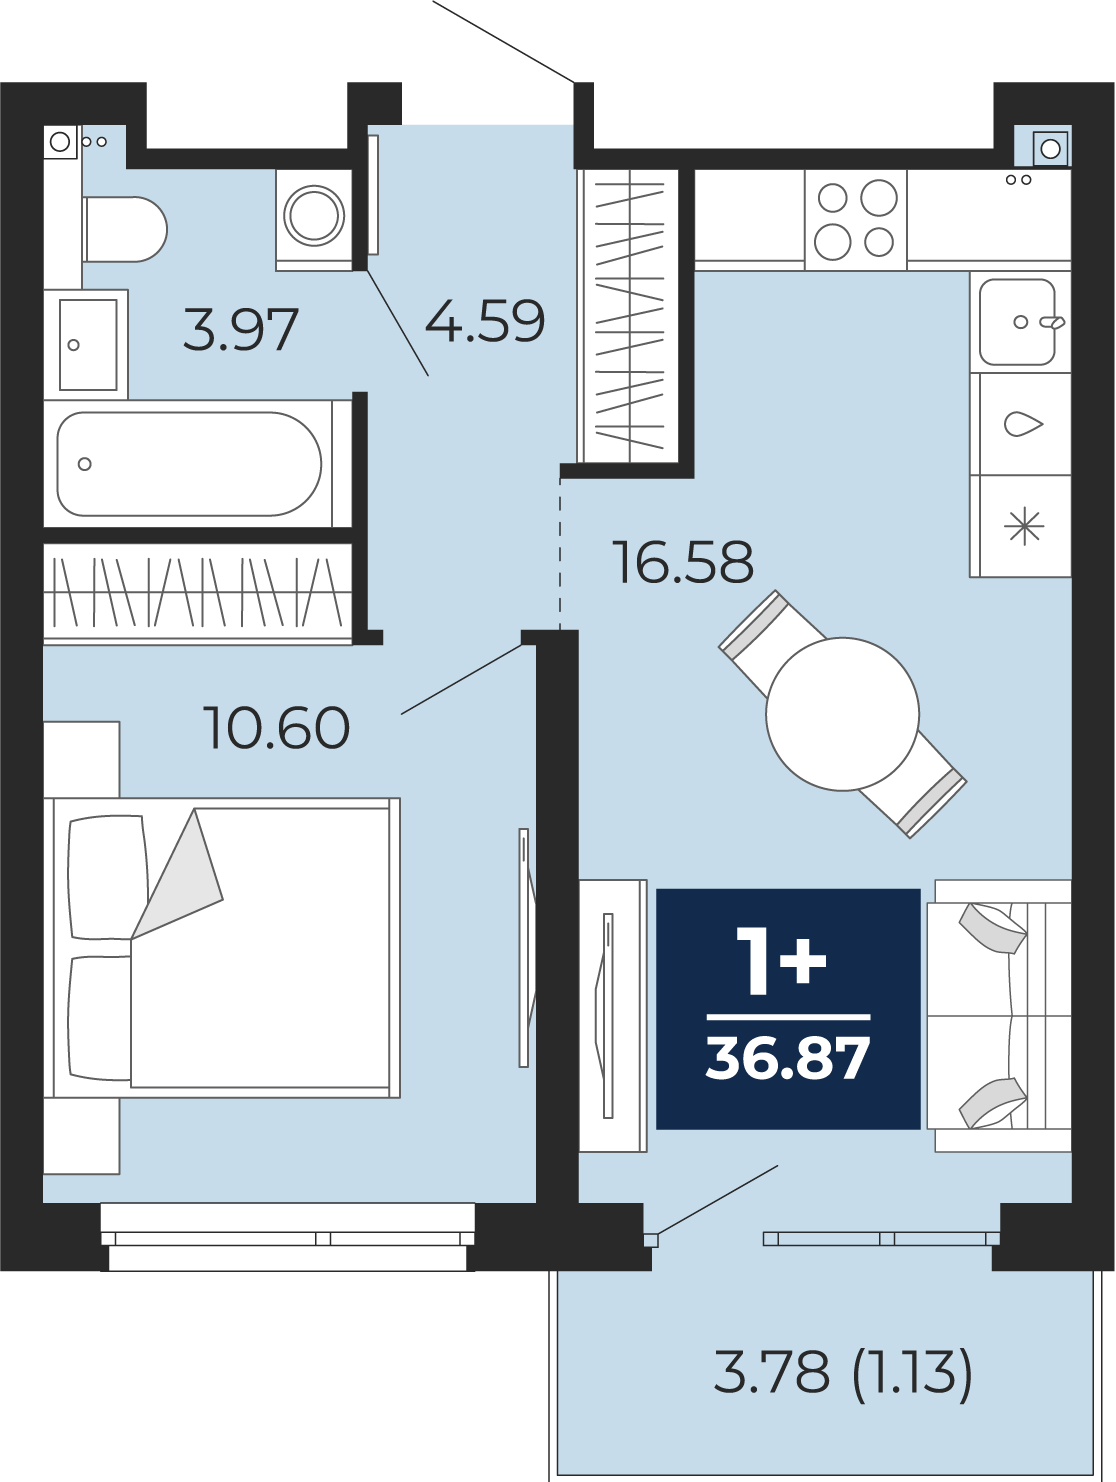 Квартира № 296, 1-комнатная, 36.87 кв. м, 19 этаж